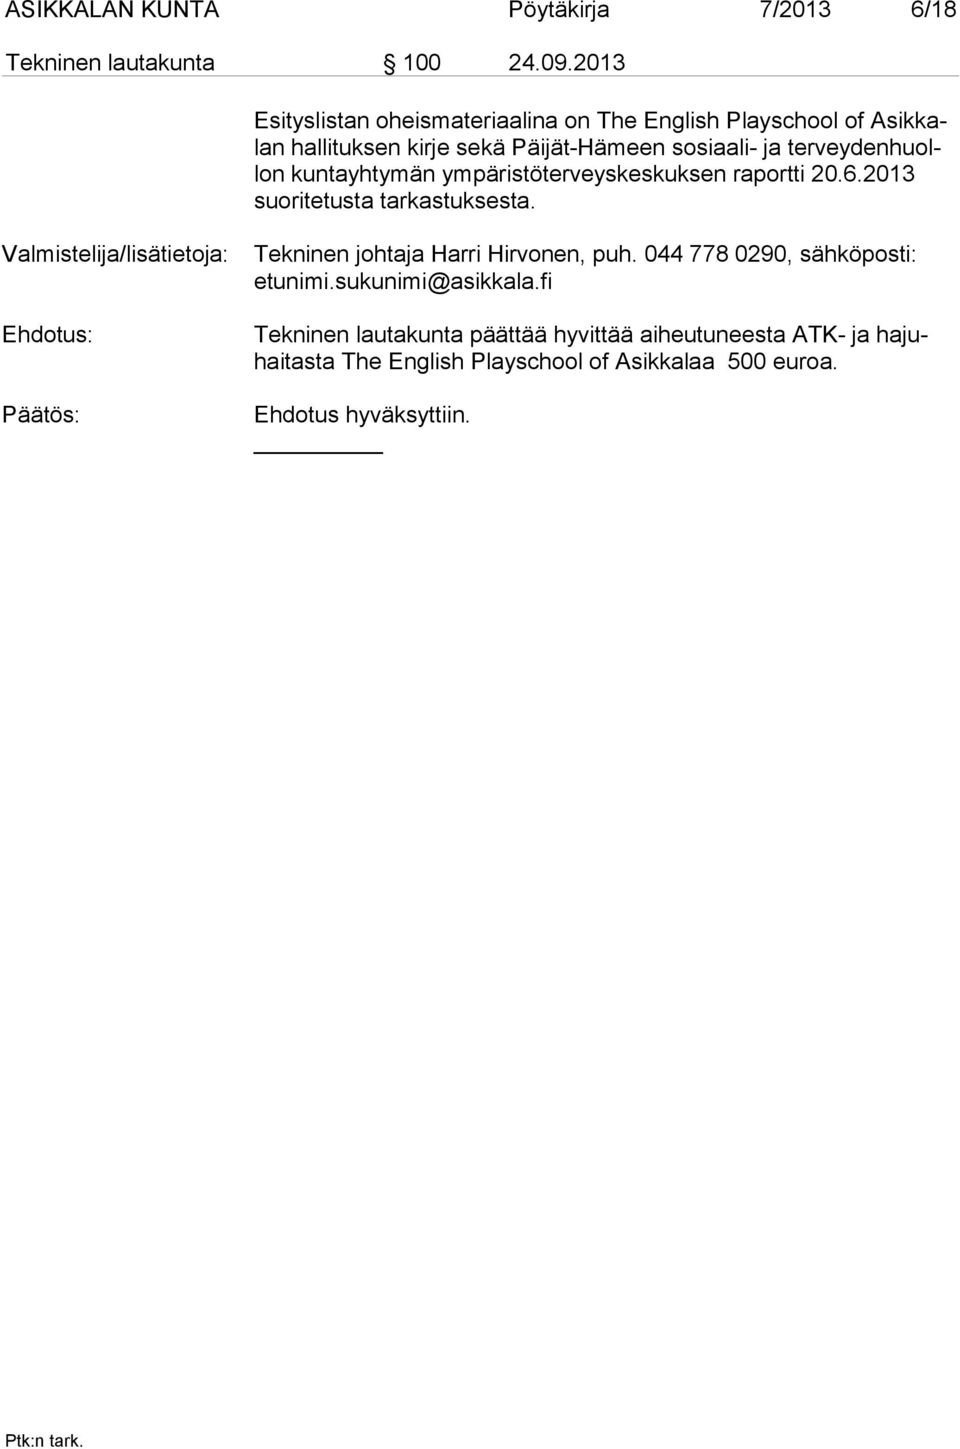 kuntayhtymän ympäristöterveyskeskuksen raportti 20.6.2013 suoritetusta tarkastuksesta.